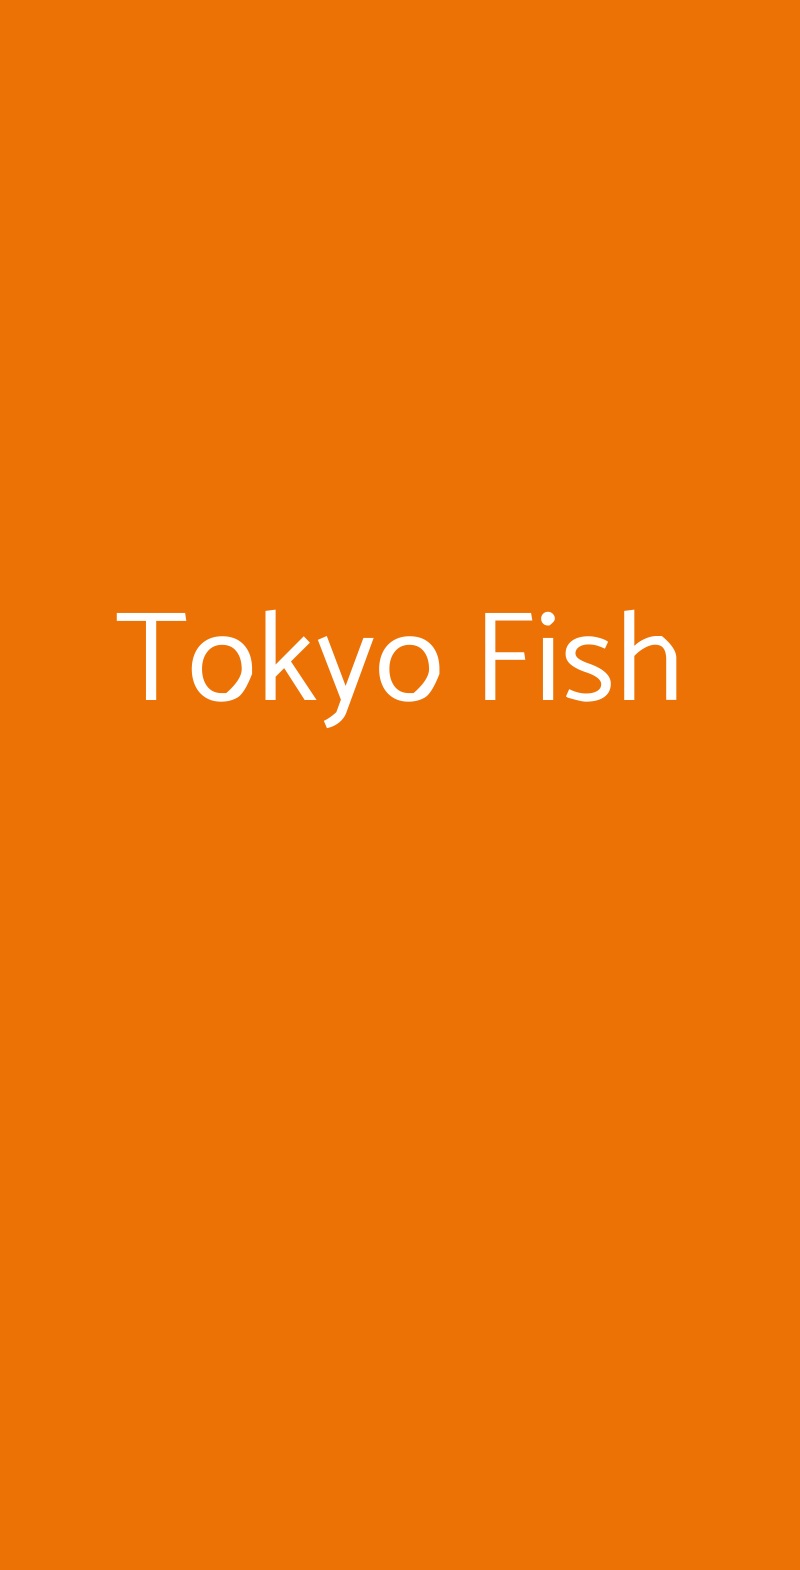 Tokyo Fish Milano menù 1 pagina